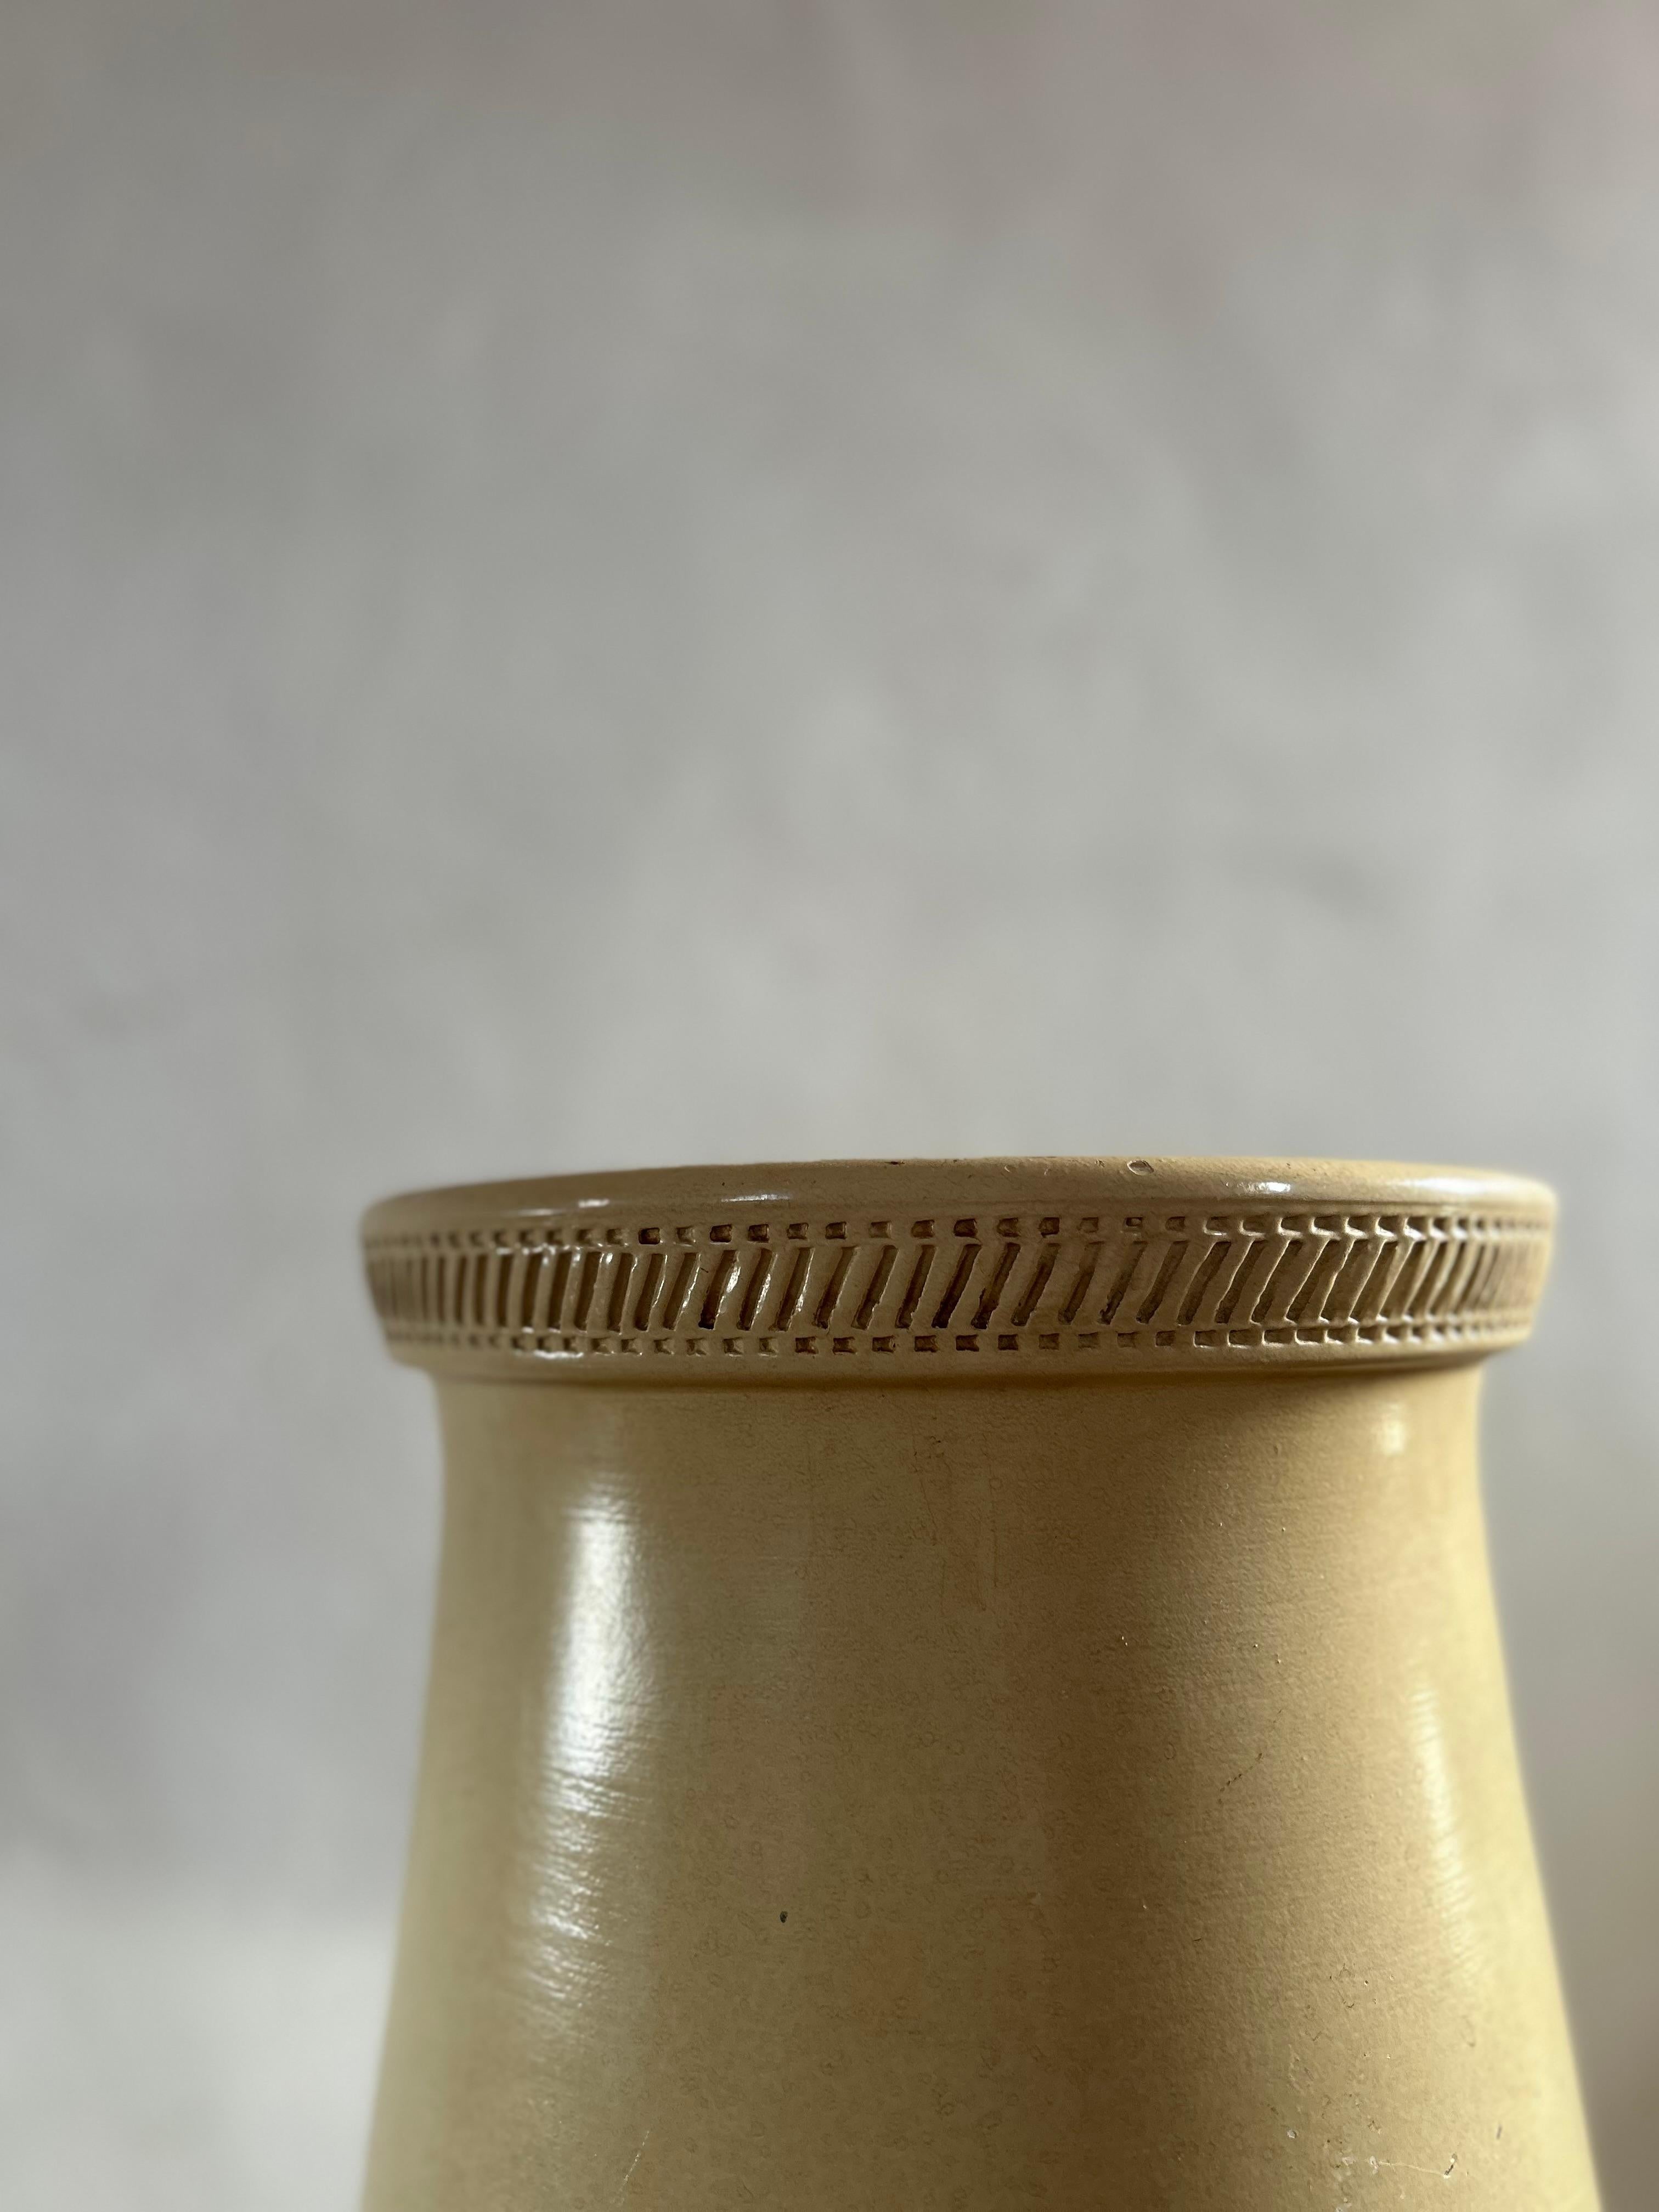 dekorative Bodenvase von Knabstrup, die in den 1950er Jahren in Dänemark hergestellt wurde. Die Stücke von Knabstrup sind für ihre außergewöhnliche Keramik und ihr zeitloses Design bekannt und bei Sammlern und Designliebhabern weltweit sehr